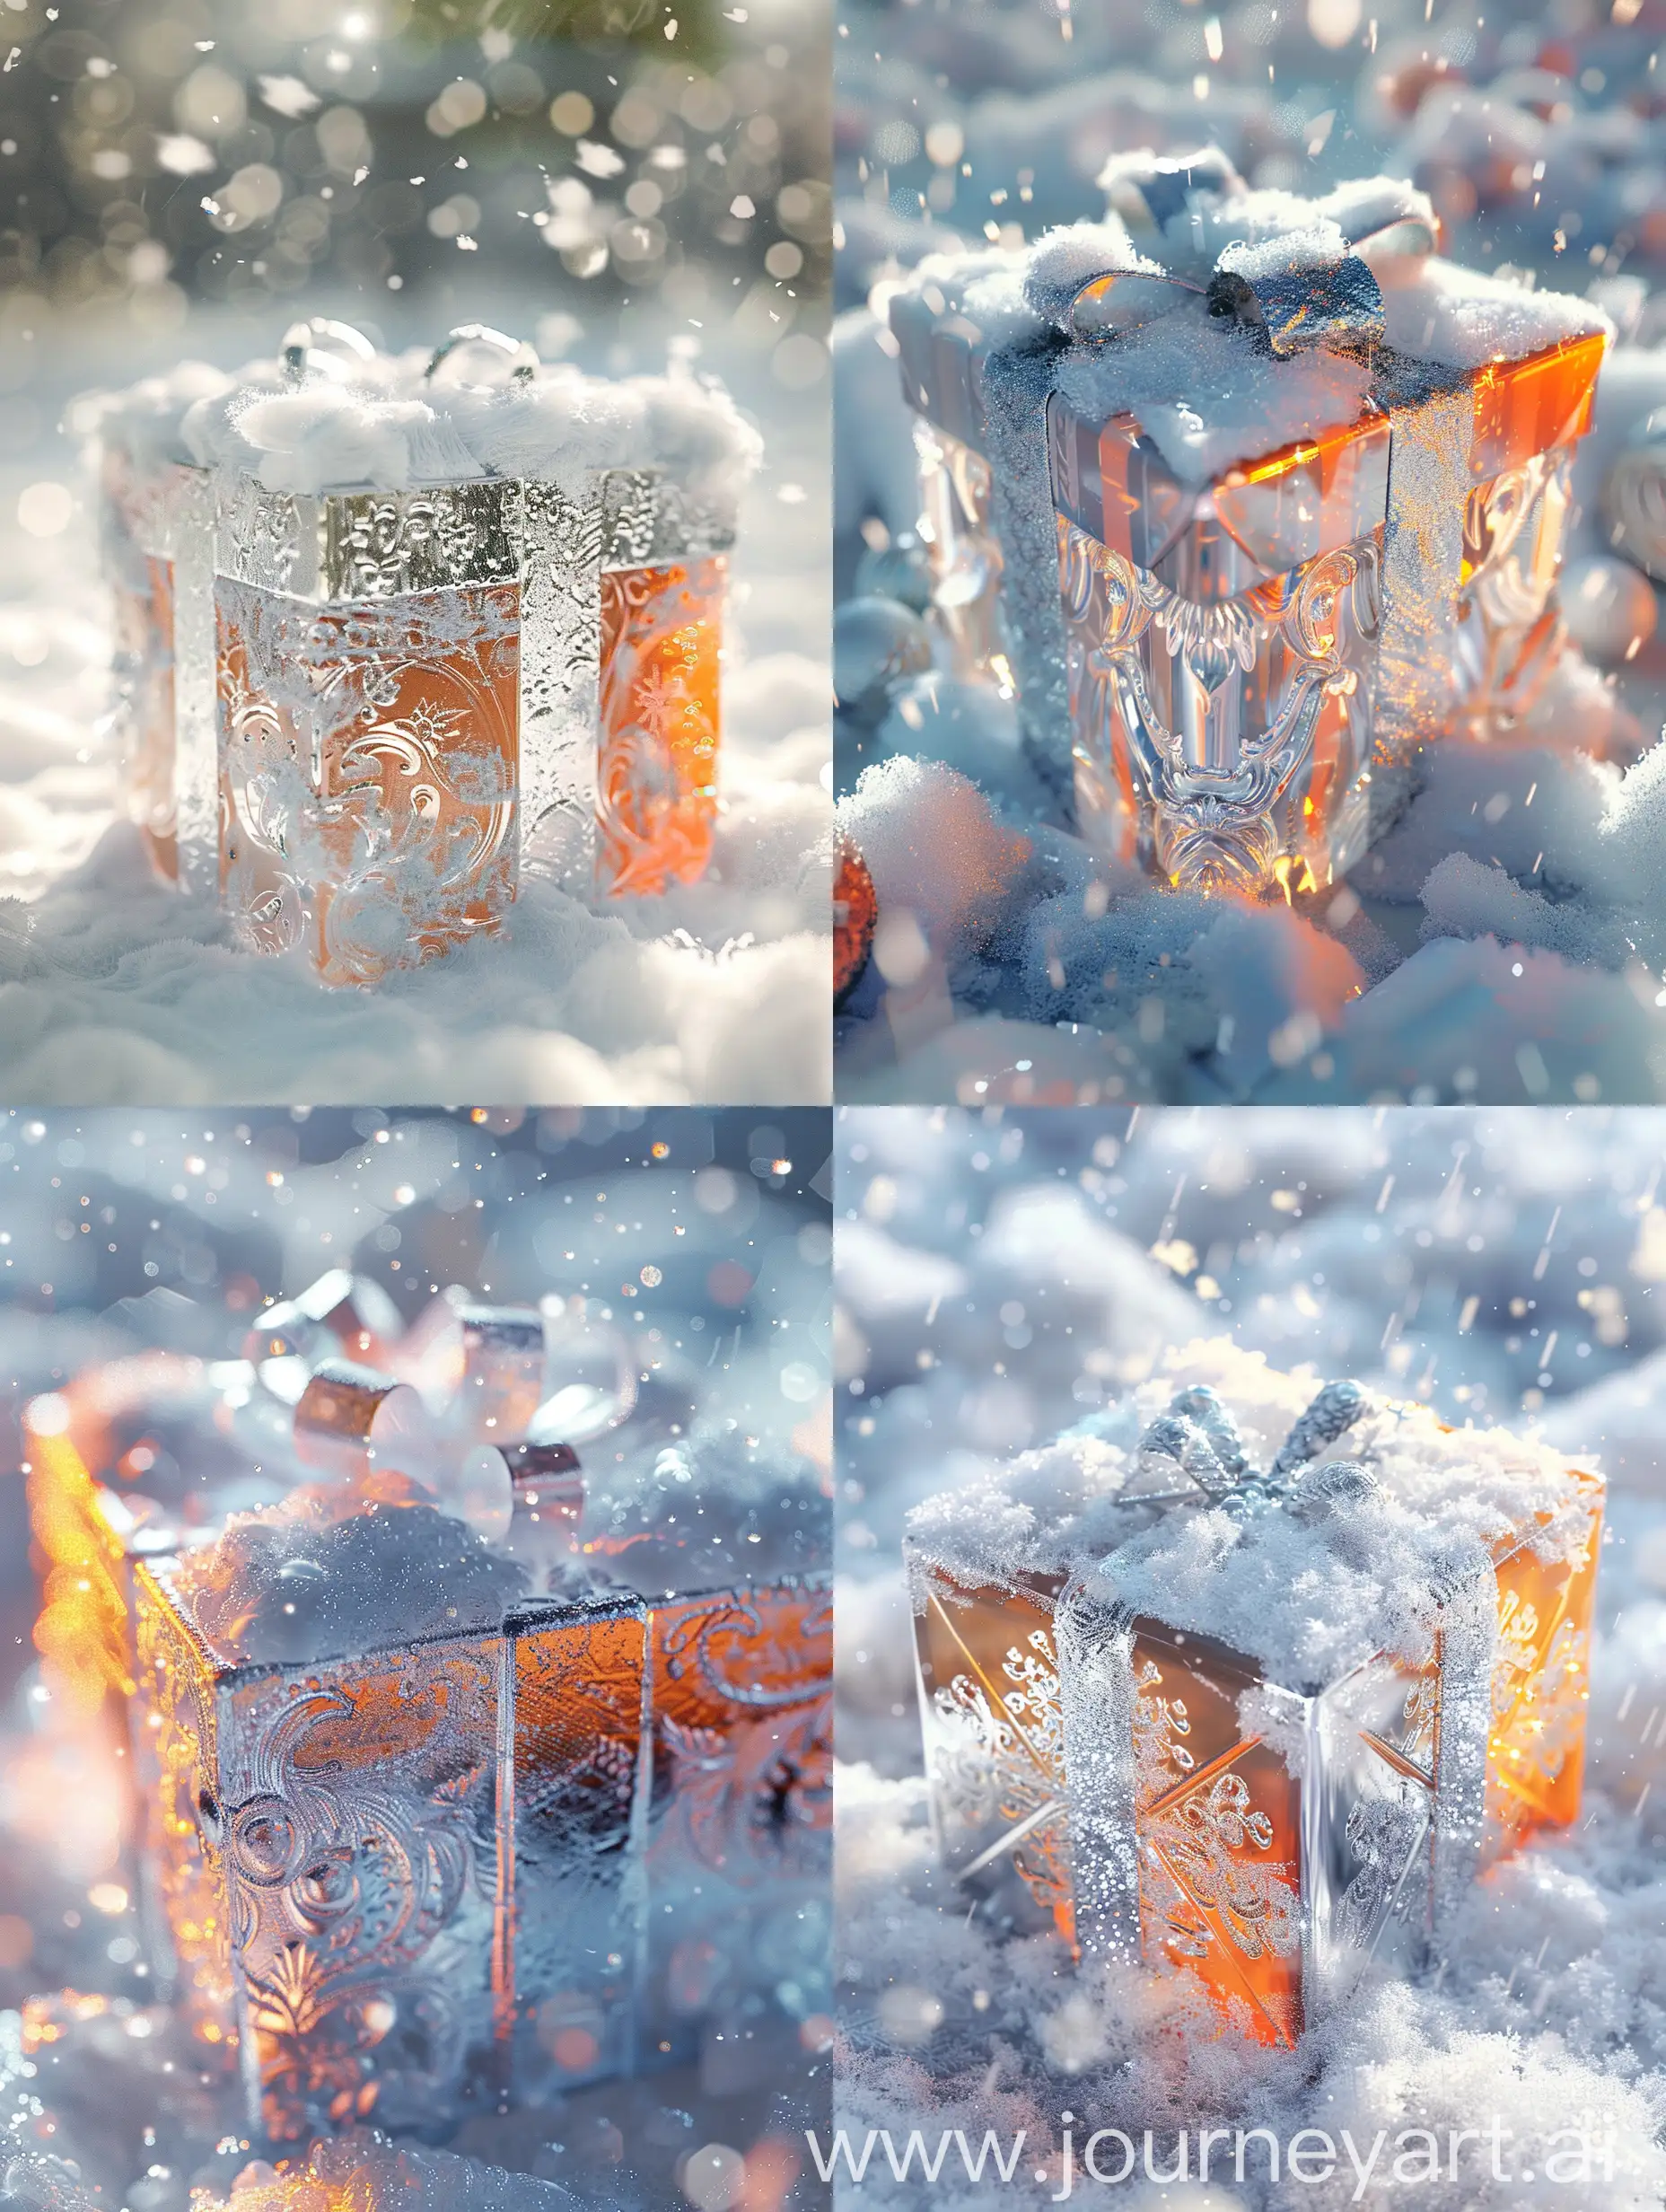 Futuristic-Rococo-SnowCovered-Gift-Box-in-Digital-Art-Style